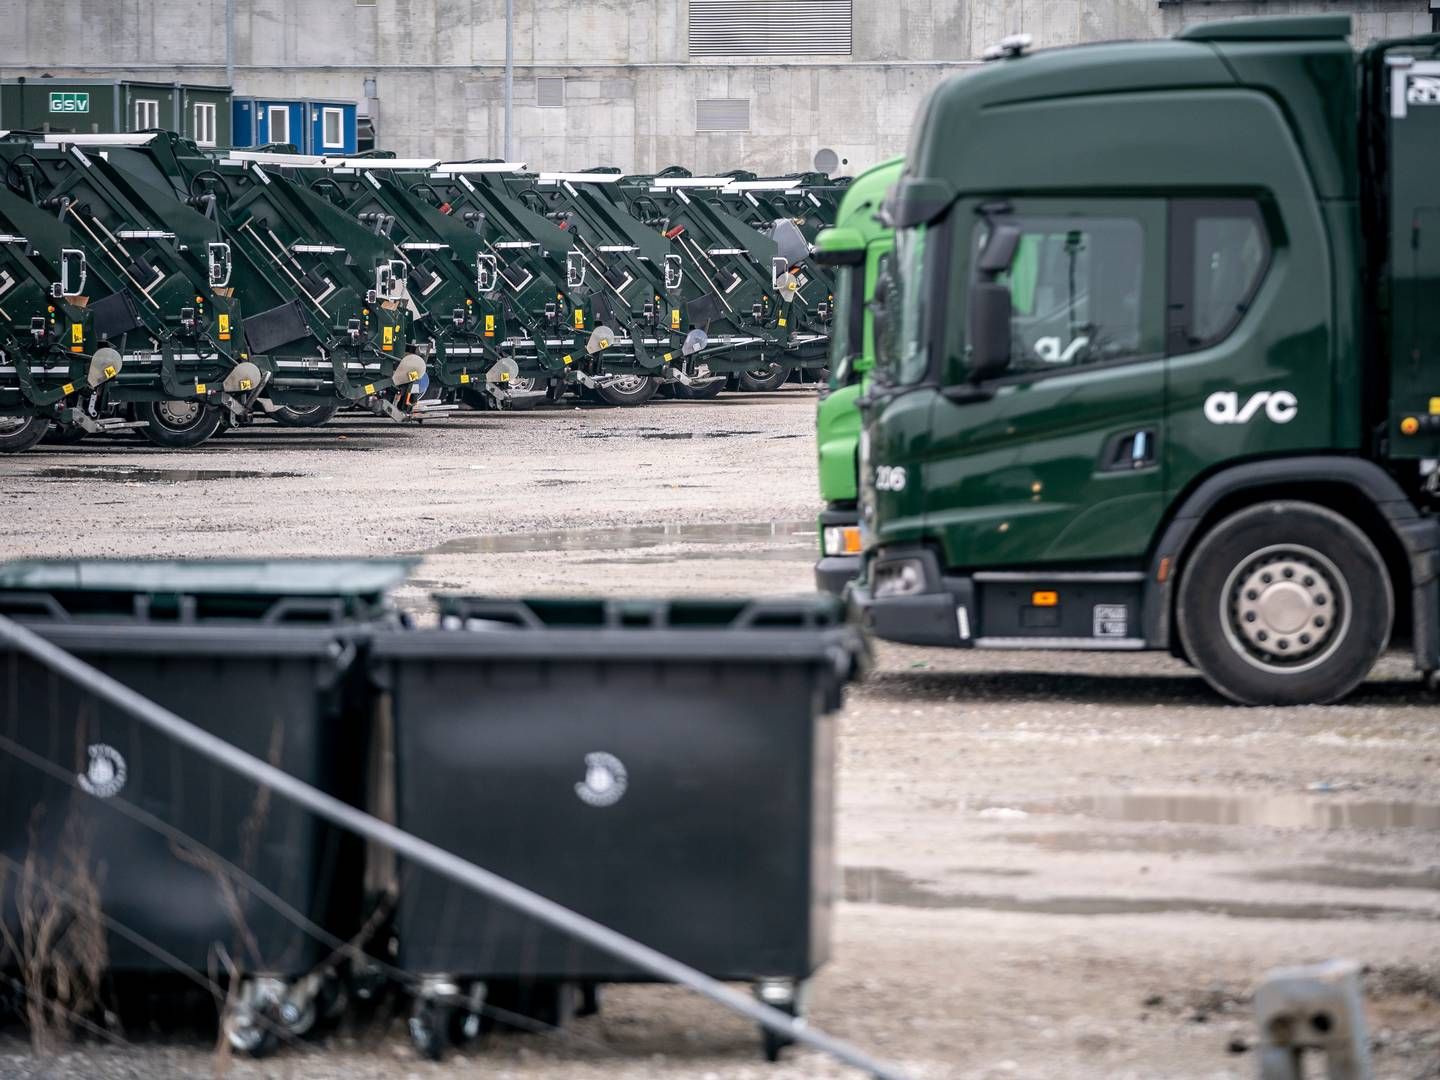 ARC's grønne el-skraldebiler har holdt stille siden mandag, hvor renovationsarbejderne indledte deres arbejdsnedlæggelse. | Foto: Mads Claus Rasmussen/Ritzau Scanpix